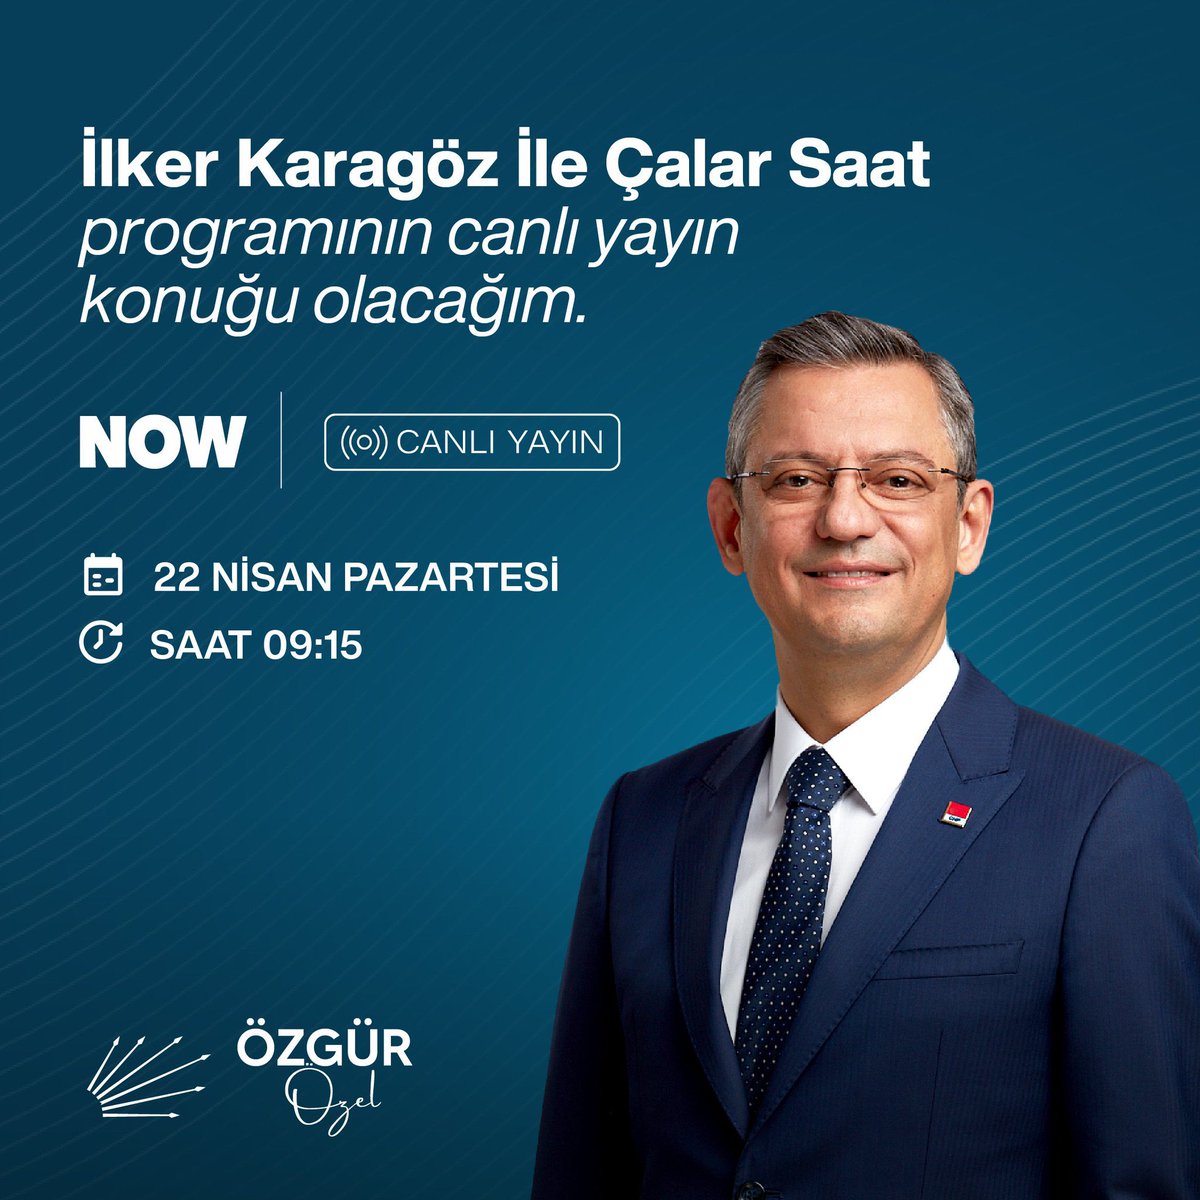 CHP lideri #ÖzgürÖzel #NOW’da @Karagozilker ile #ÇalarSaat camlı yayın konuğu oluyor… @eczozgurozel